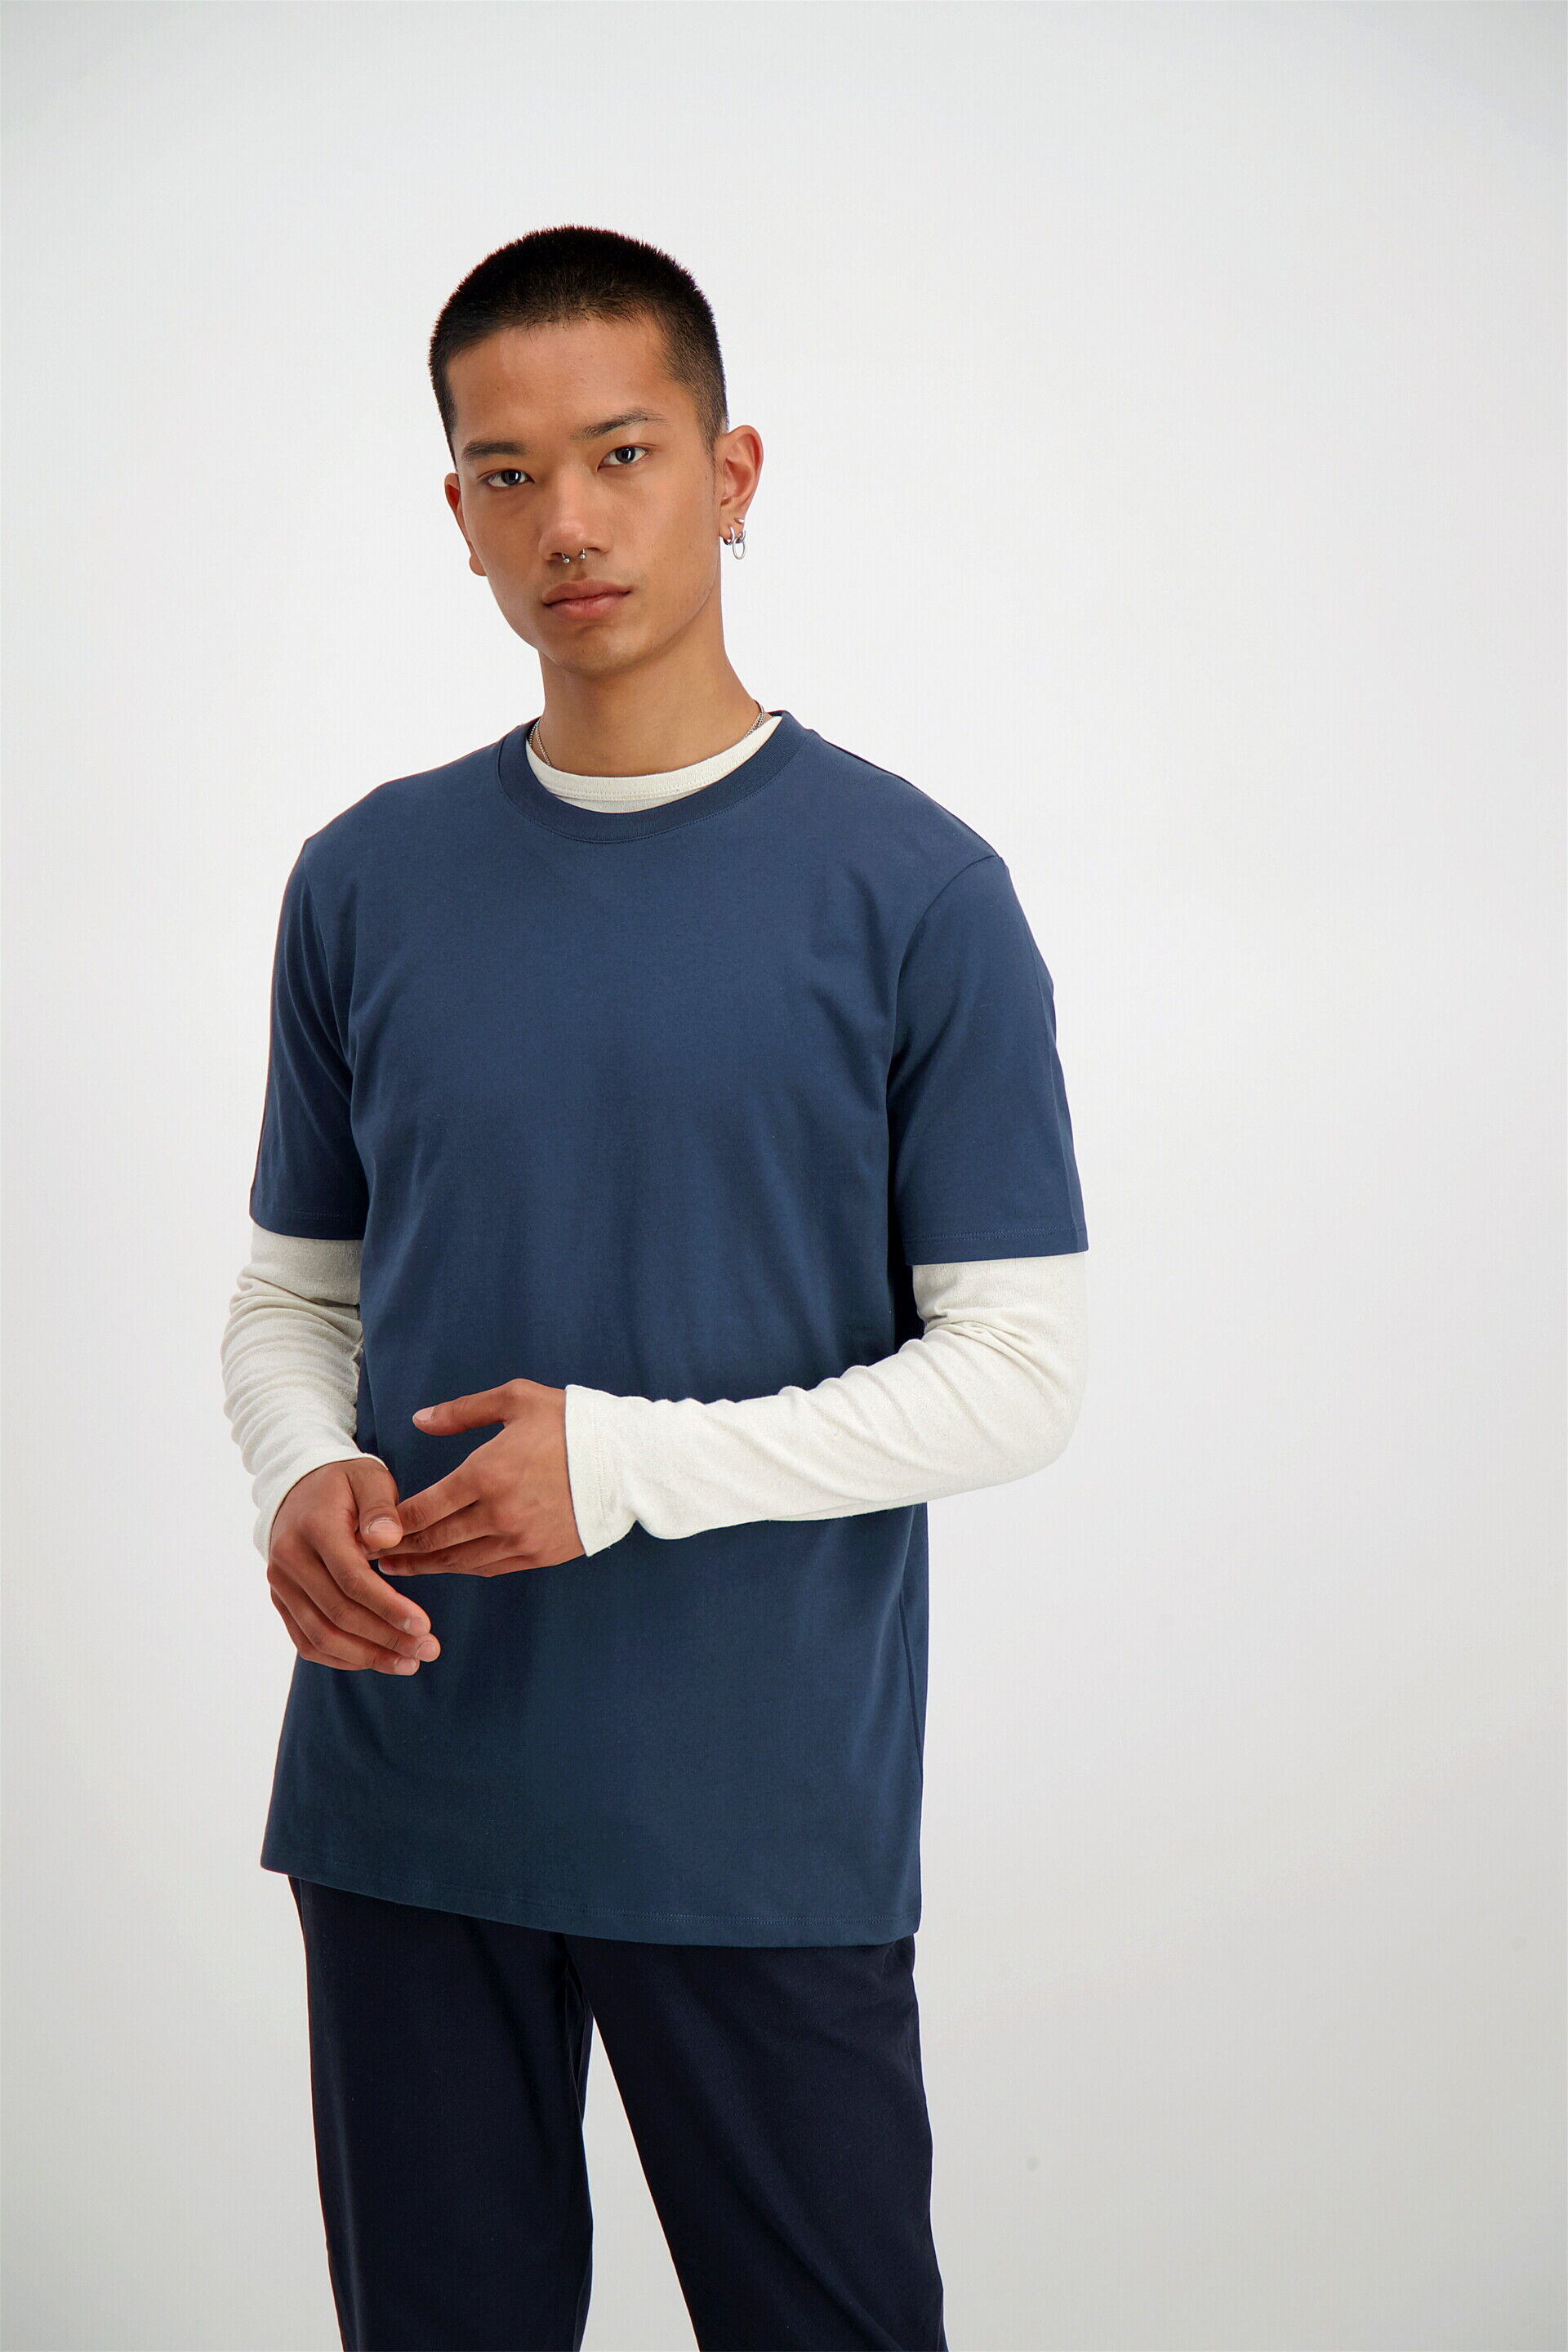 Junk de Luxe  T-shirt Blå 60-40005